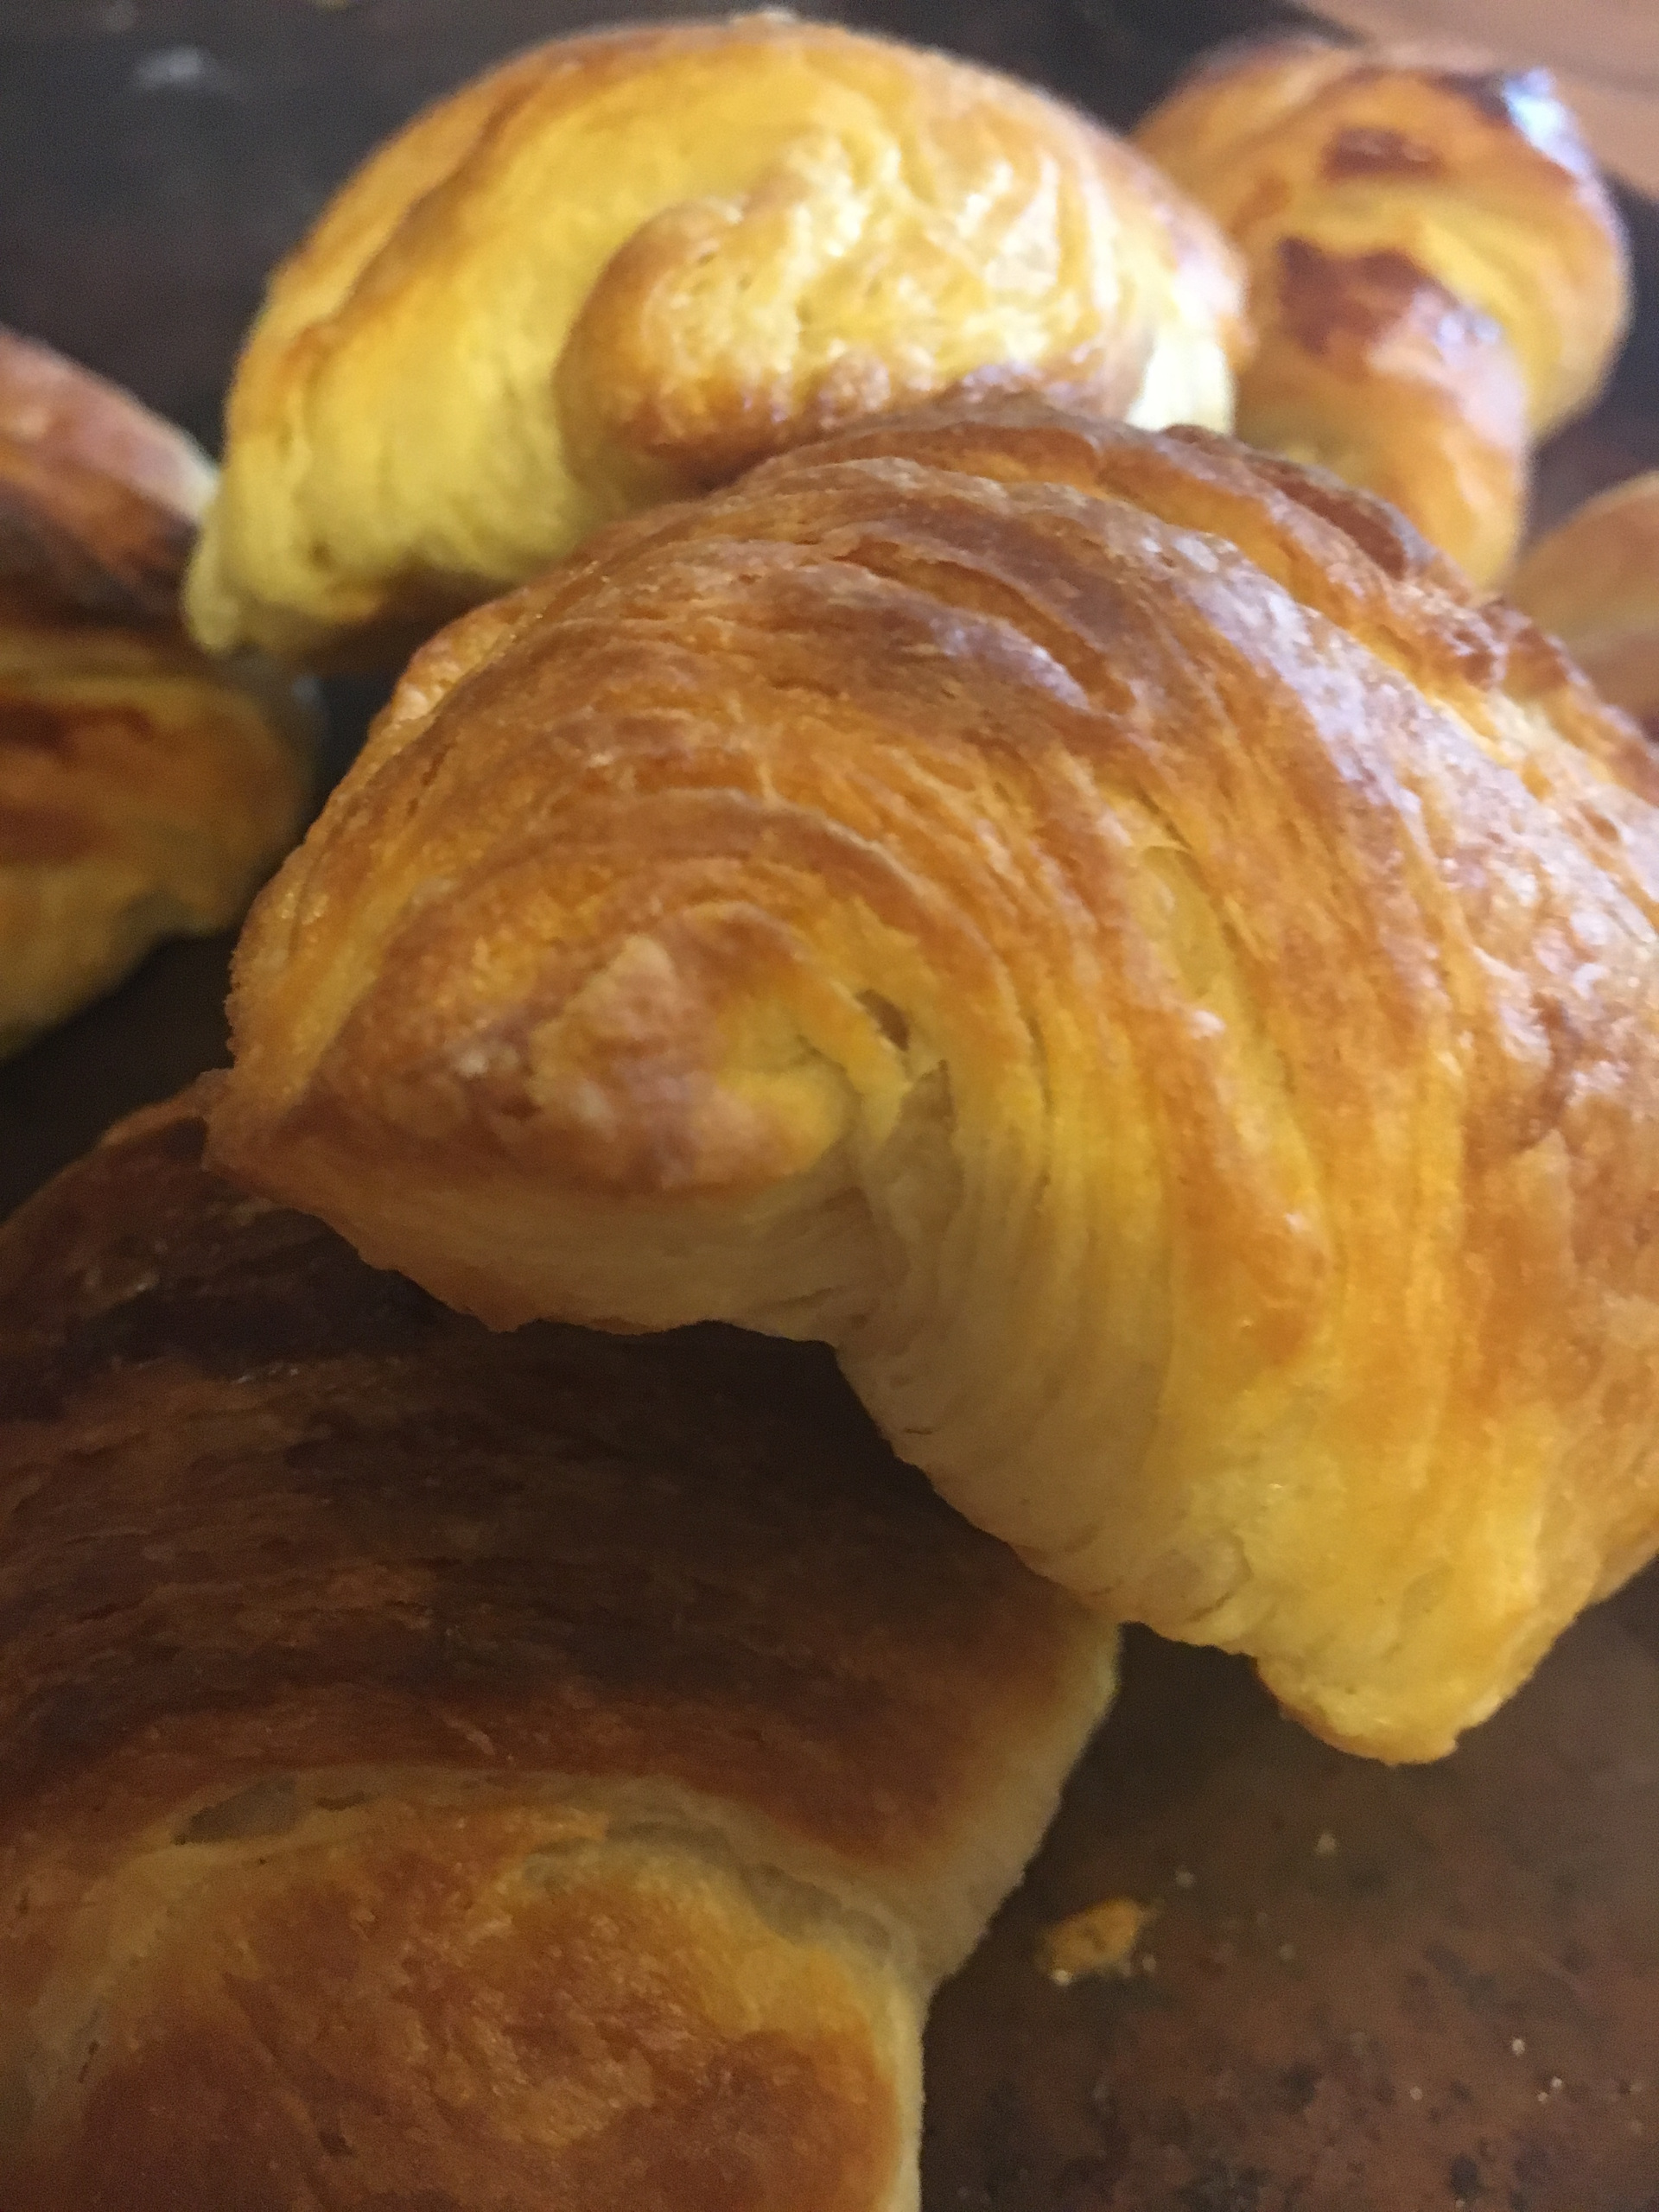 Mini Croissant, Pain au Raisin and Danish pastries